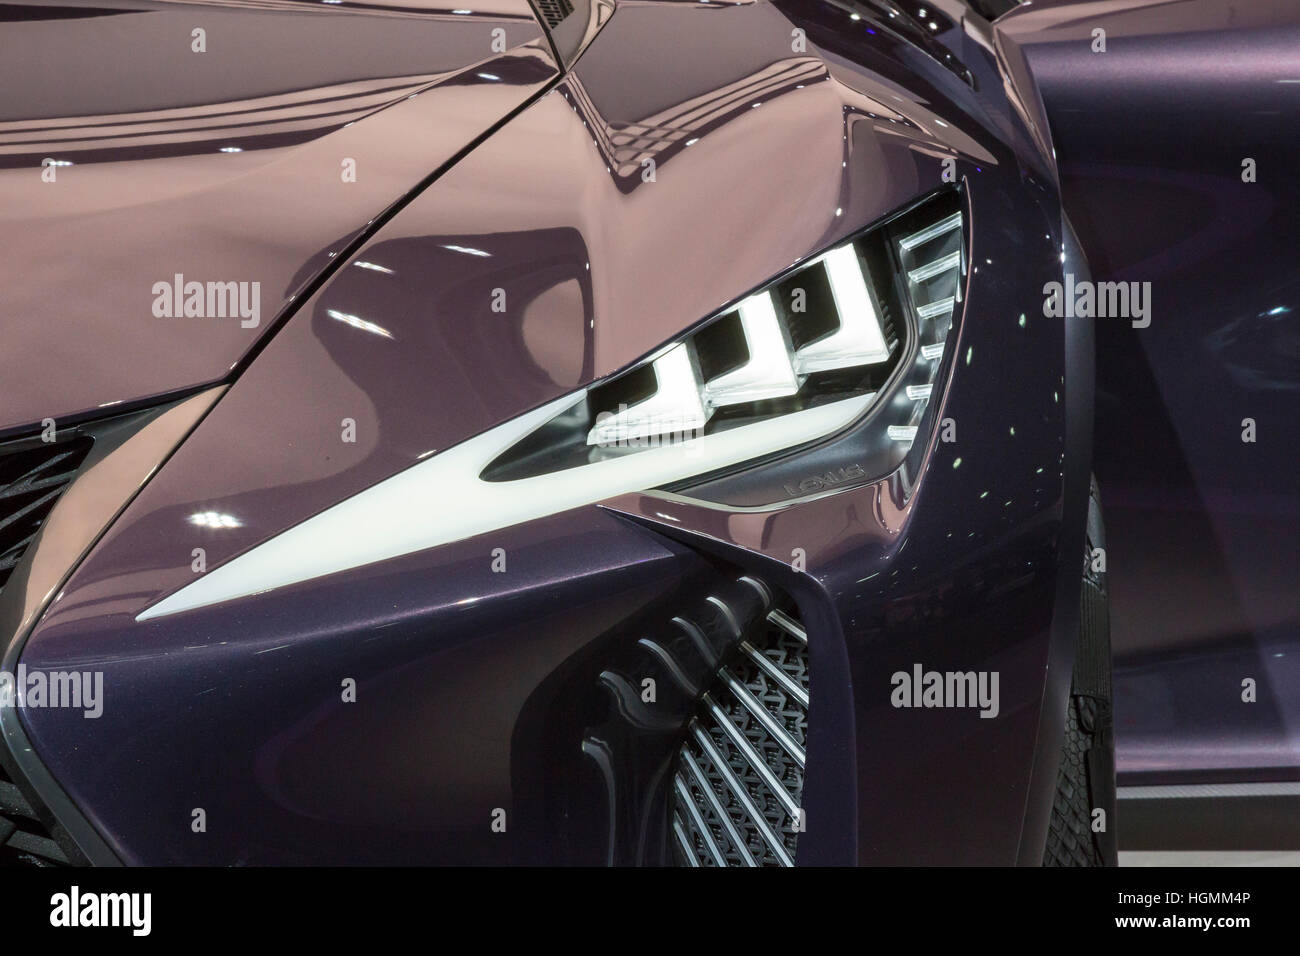 Detroit, Michigan, USA - 10 de enero de 2017 - El faro de la Lexus UX concept car en la exhibición en el North American International Auto Show. Crédito: Jim West/Alamy Live News Foto de stock